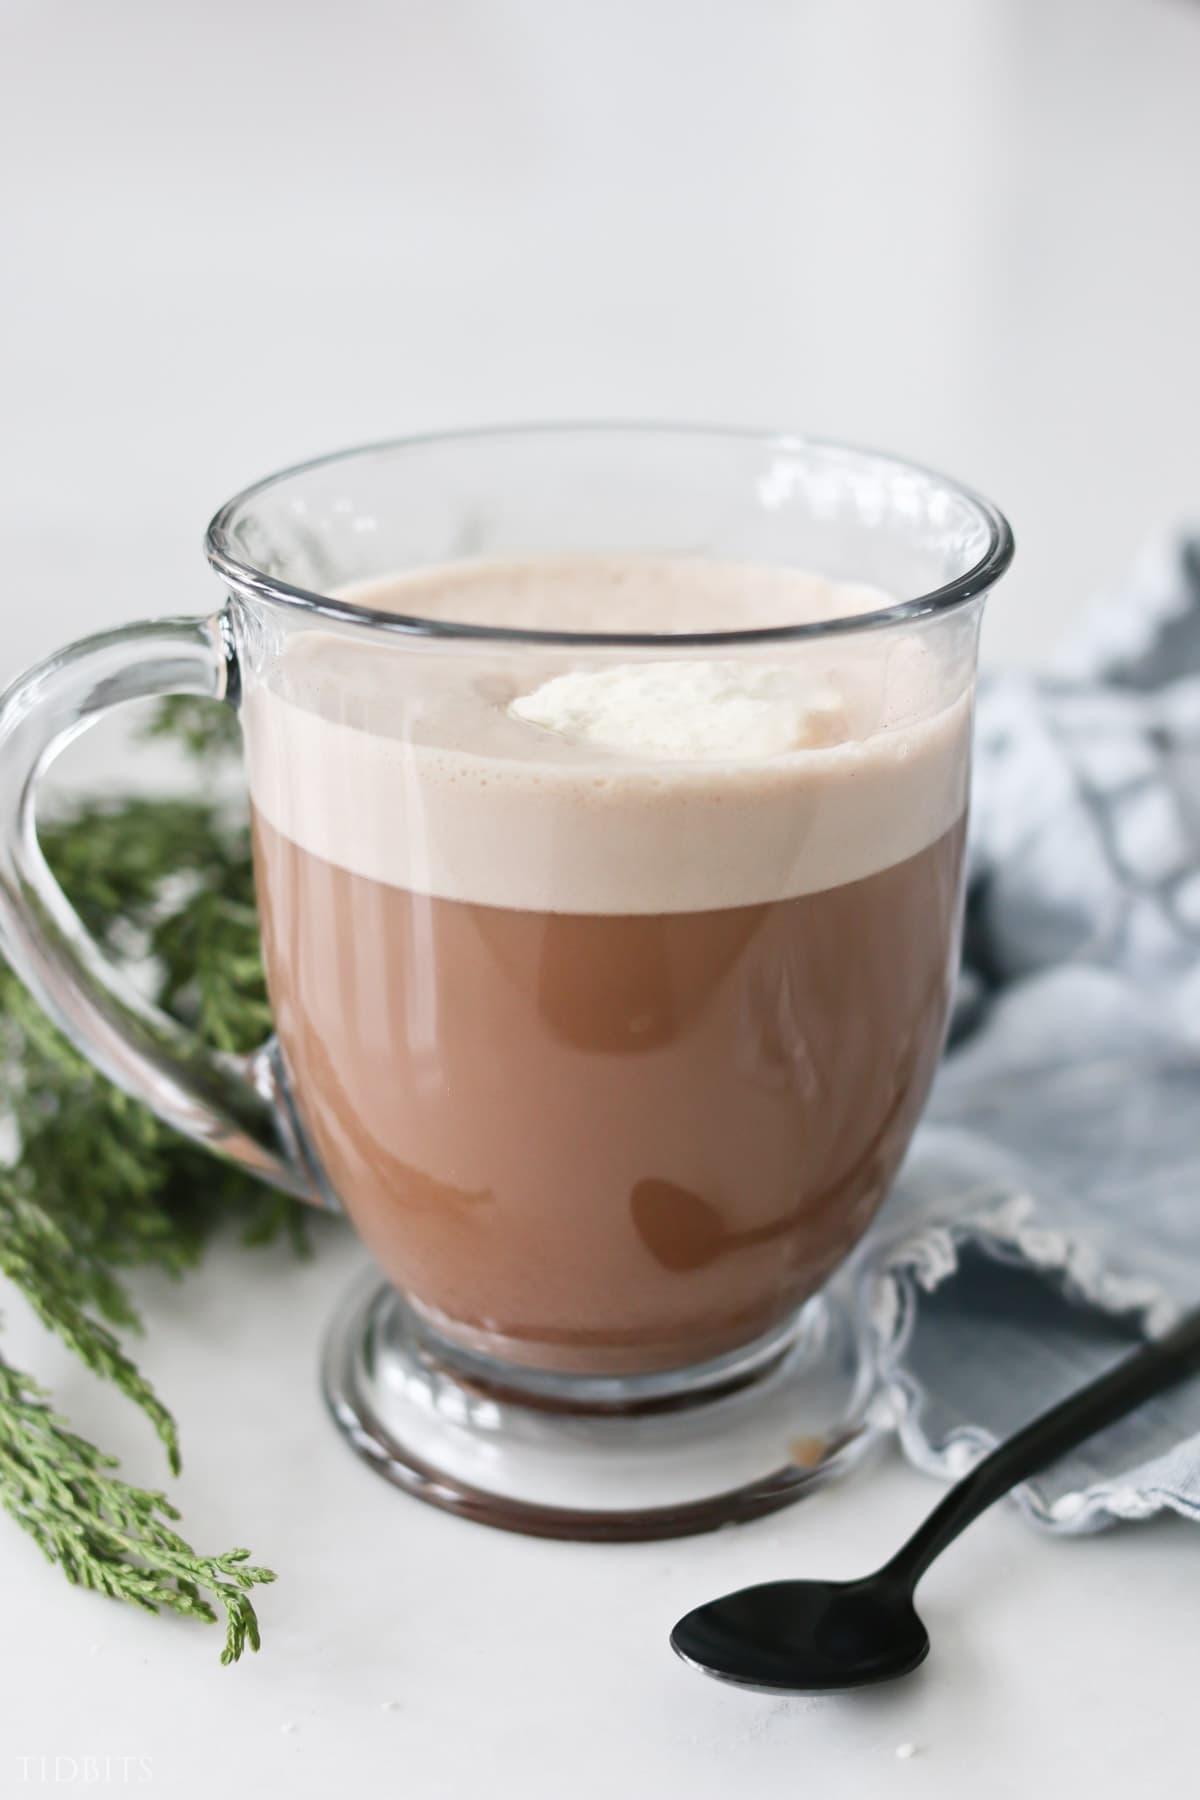 Yummy Healthy Hot Chocolate Mix Recipe - NO ADDED SUGAR!